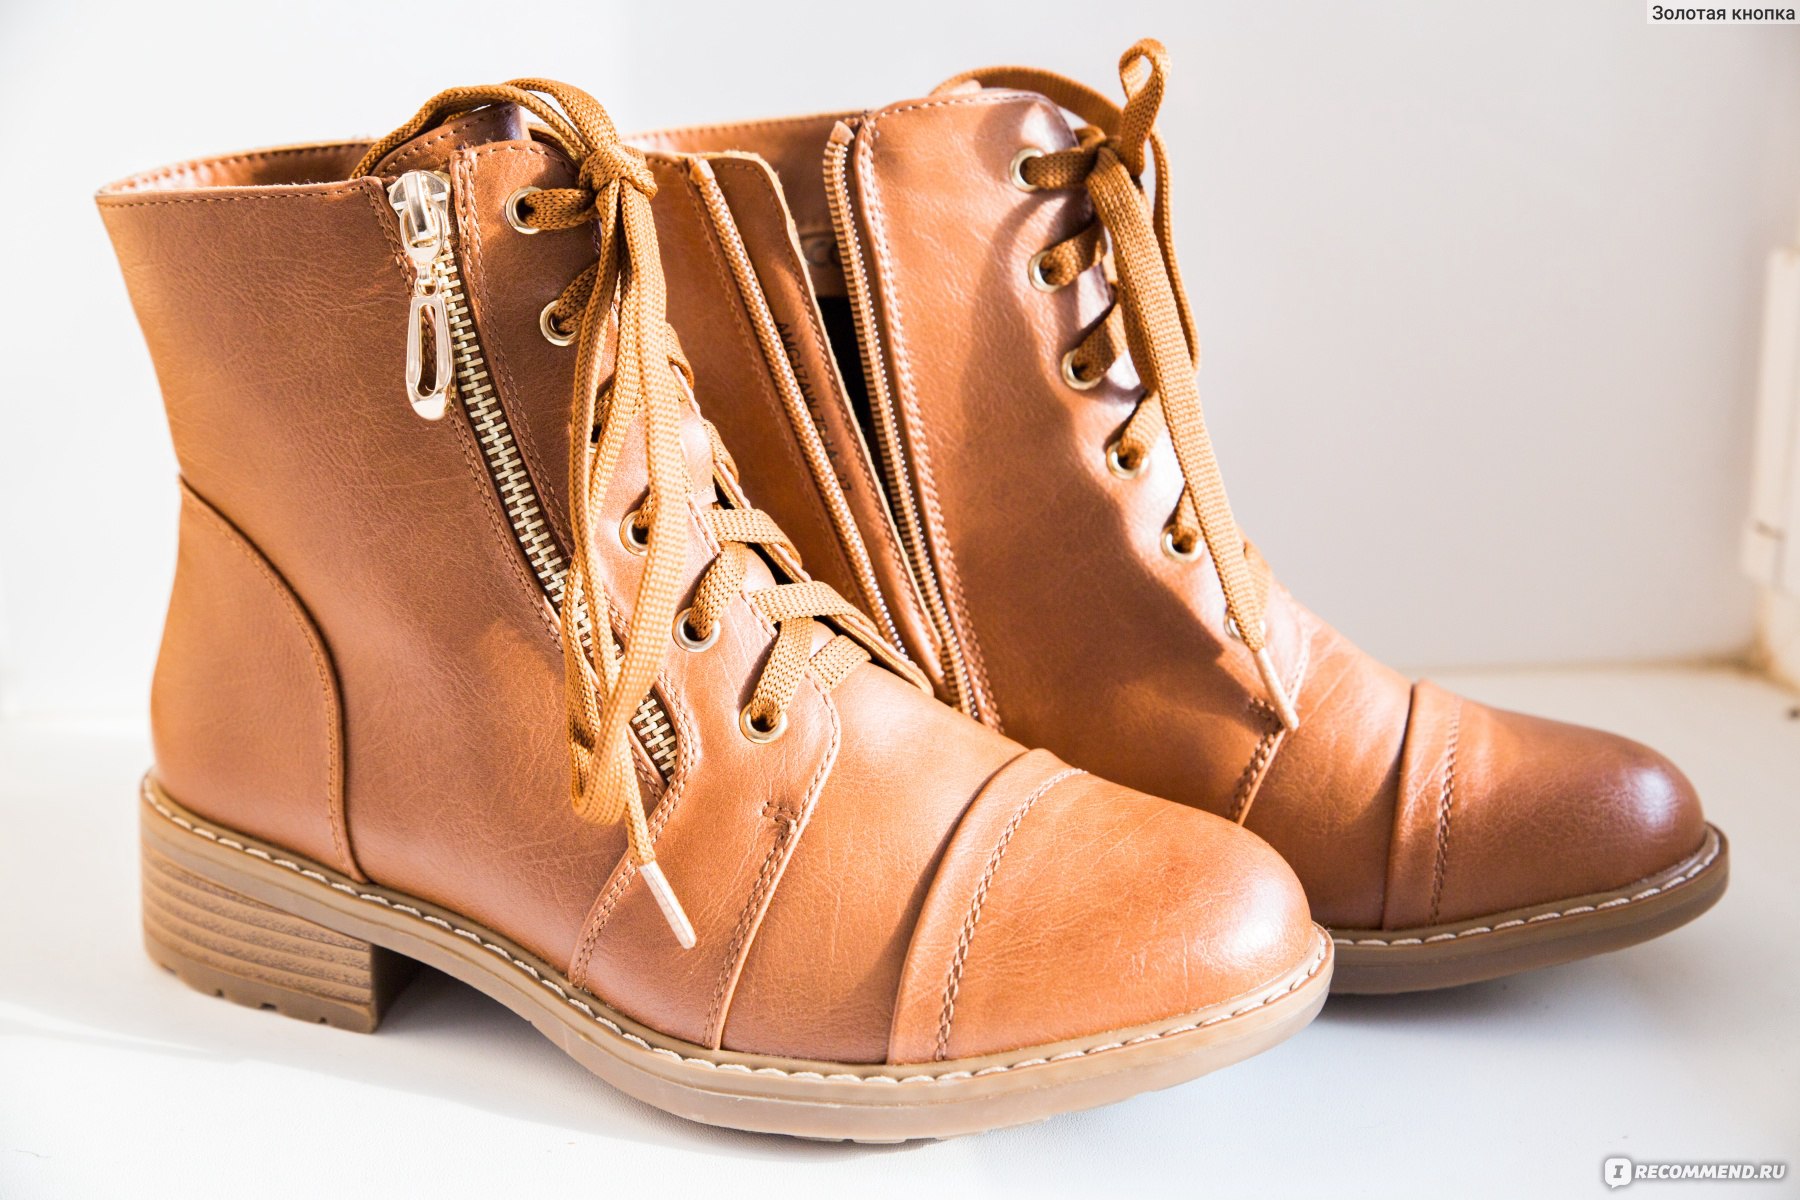 Ботинки Clovis женские демисезонные коричневые Челси